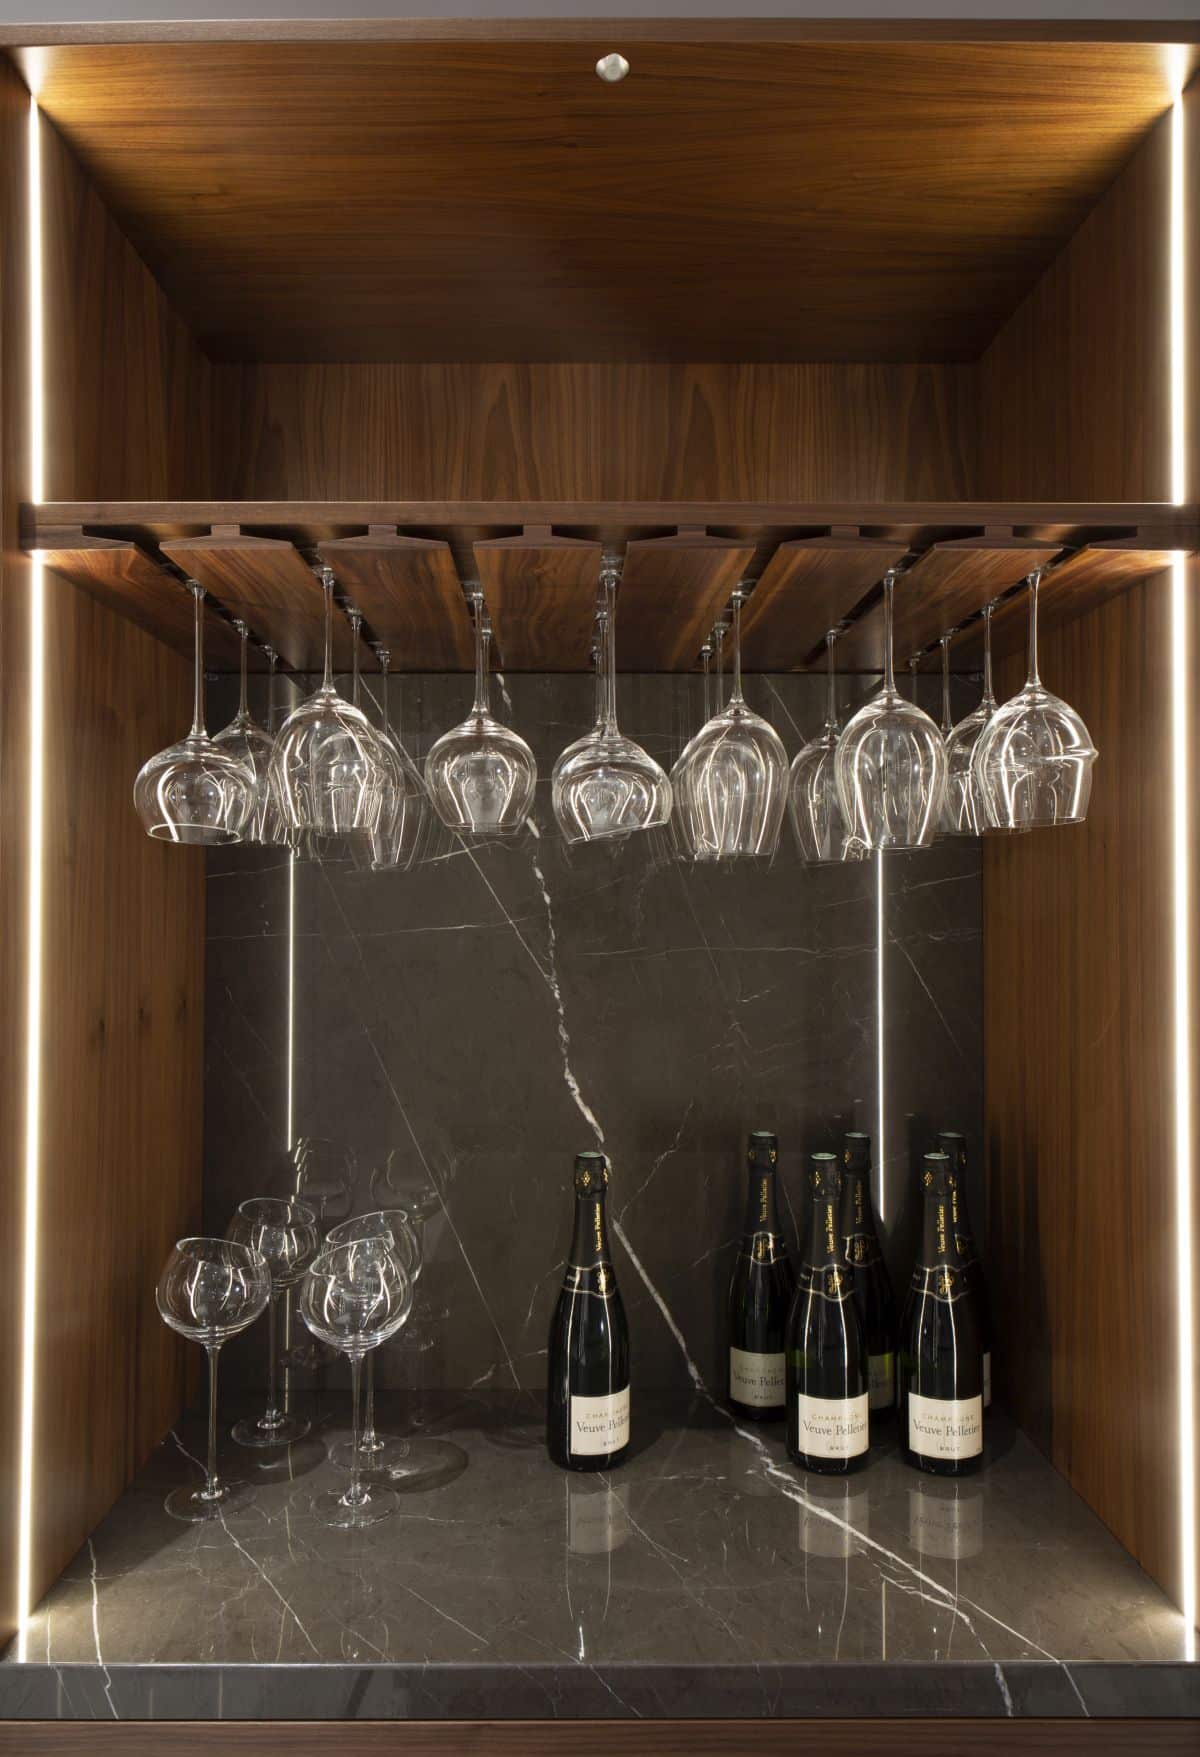 Une élégante étagère en verre est parfaitement intégrée au bar, ajoutant une fonction sans compliquer l'esthétique.